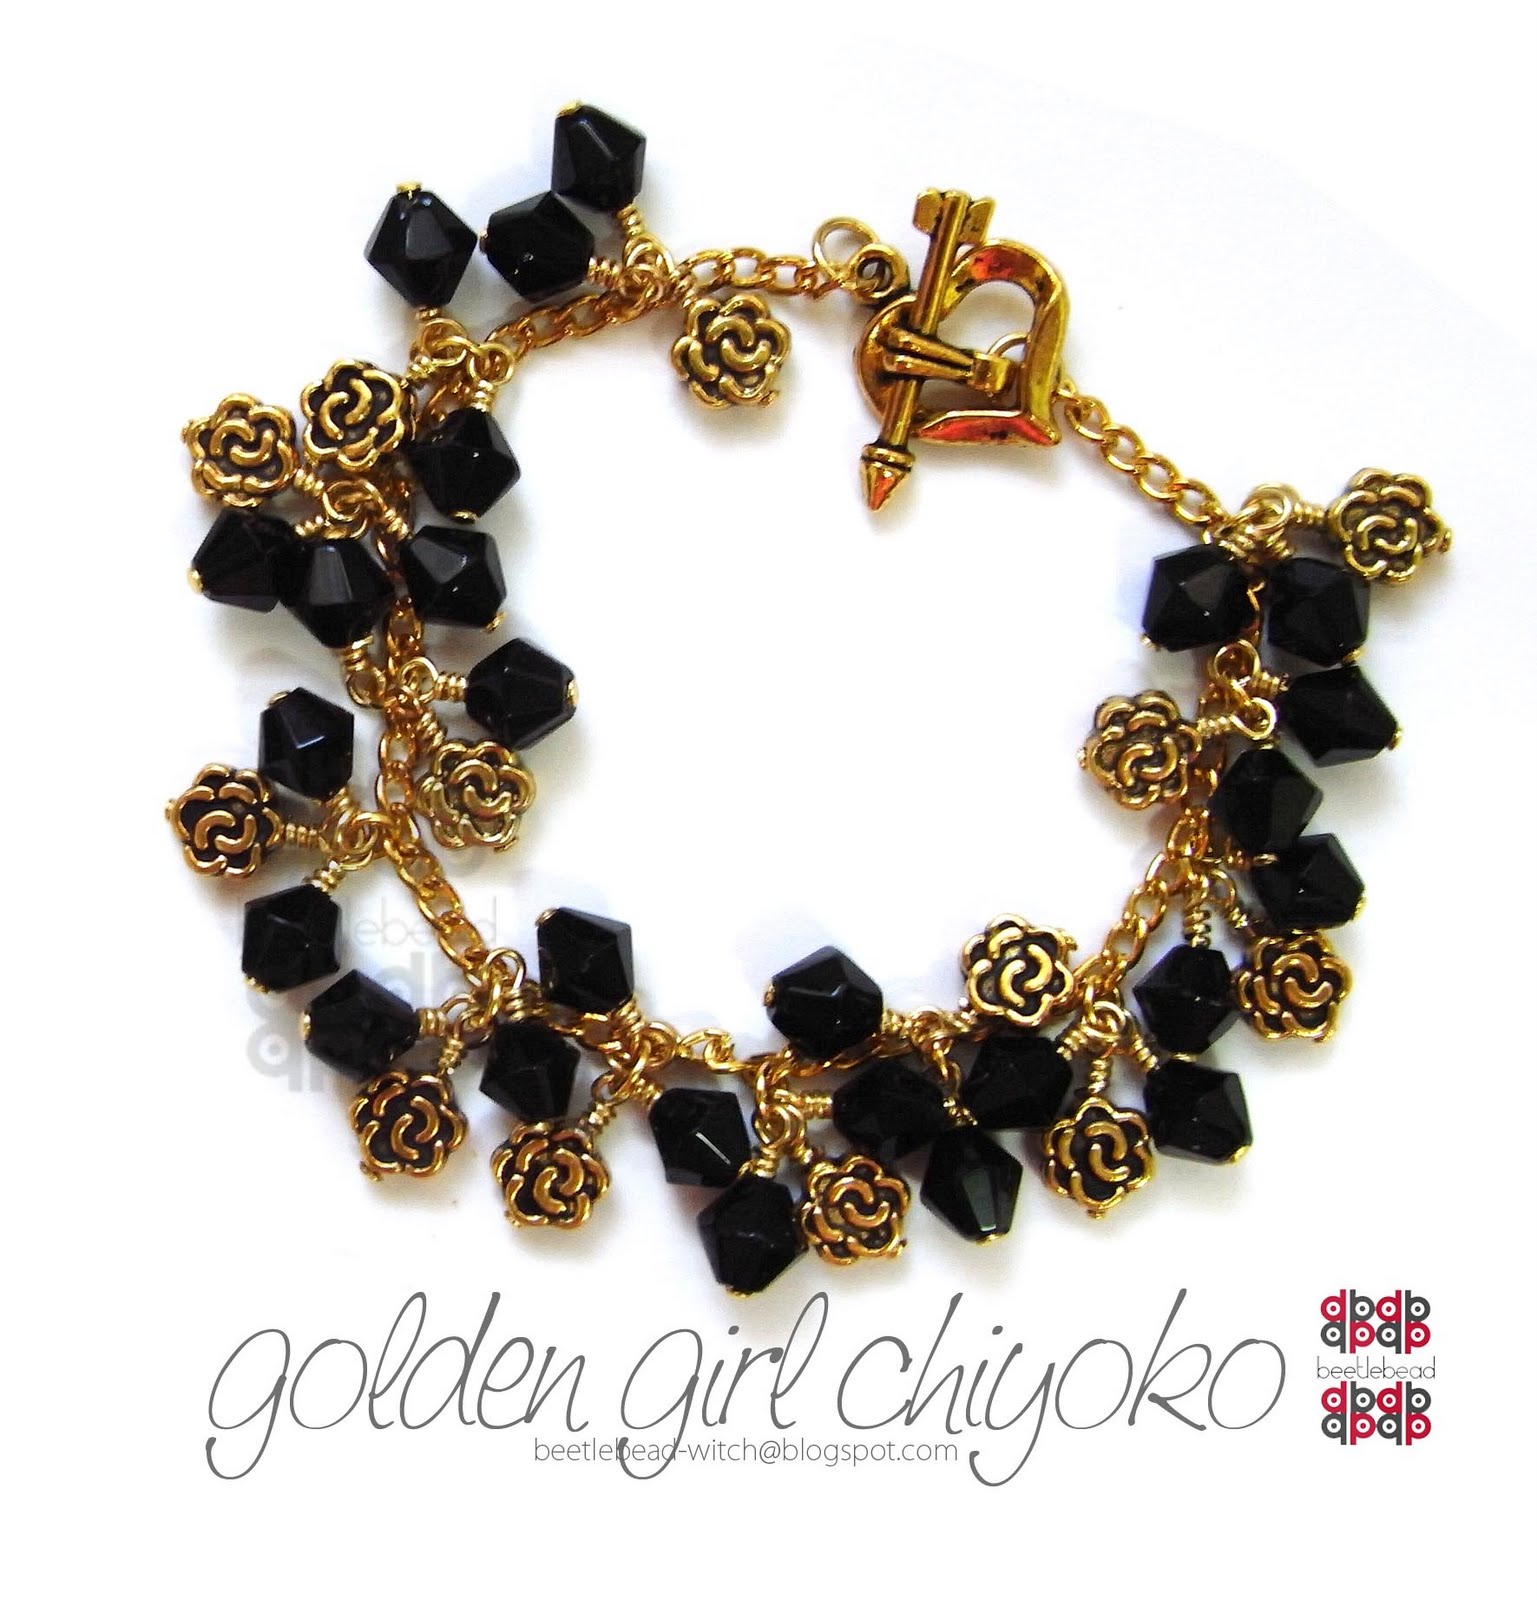 [bracelet-golden+girl+chiyoko.jpg]